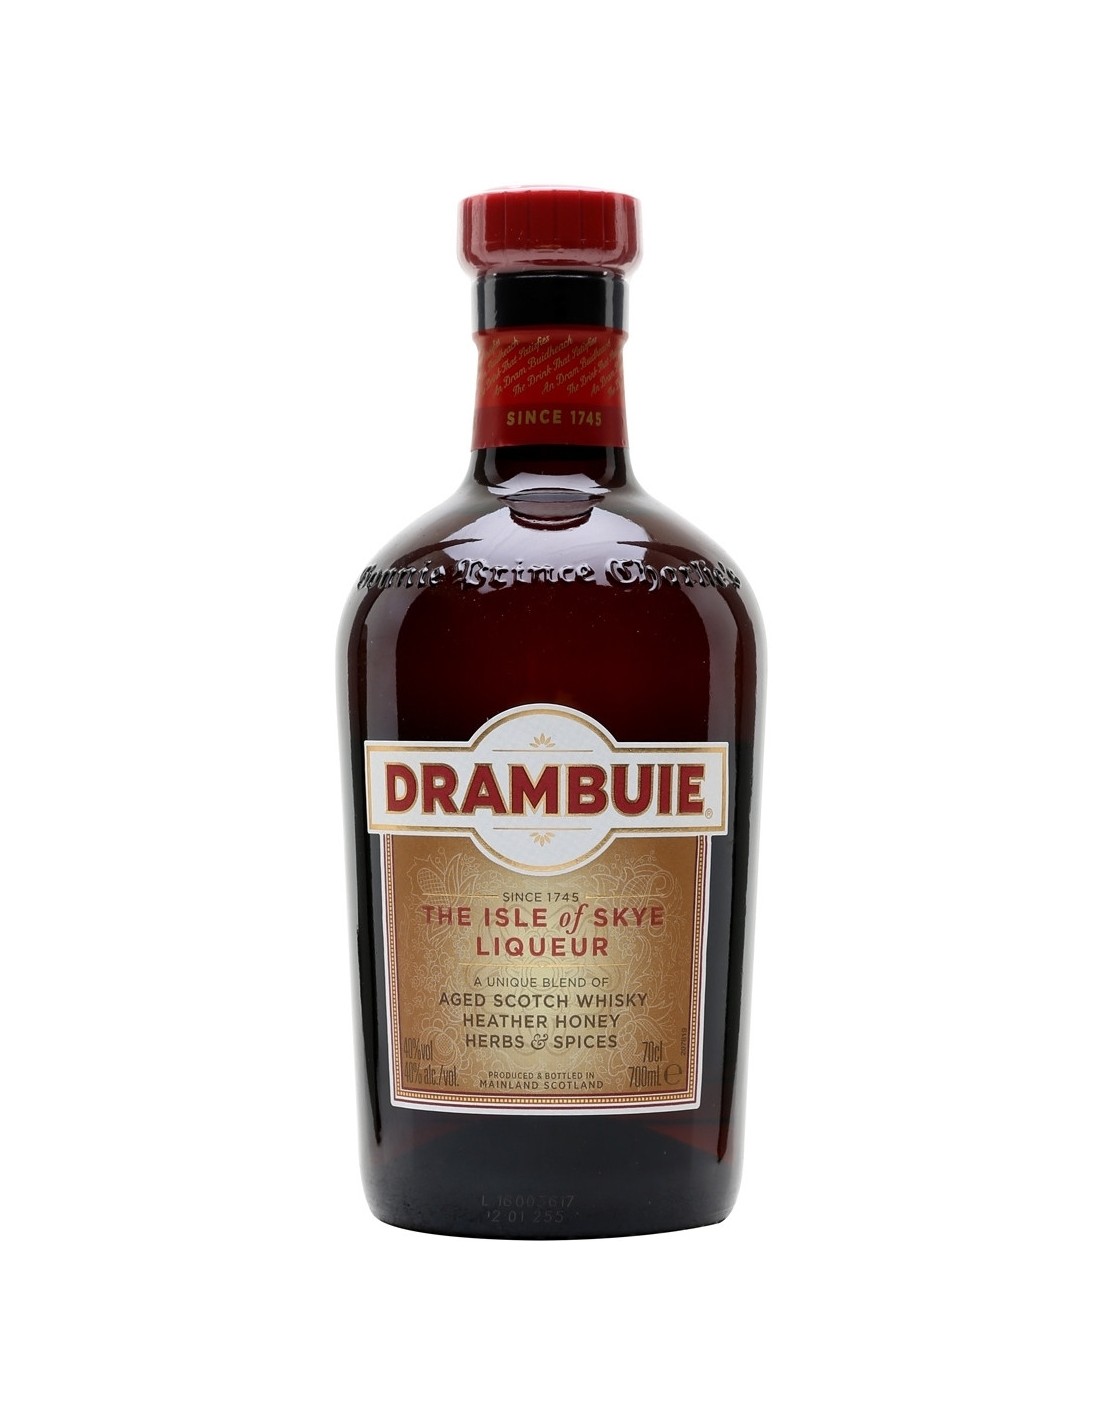 Lichior Drambuie 40% alc., 0.7L, Scotia alcooldiscount.ro